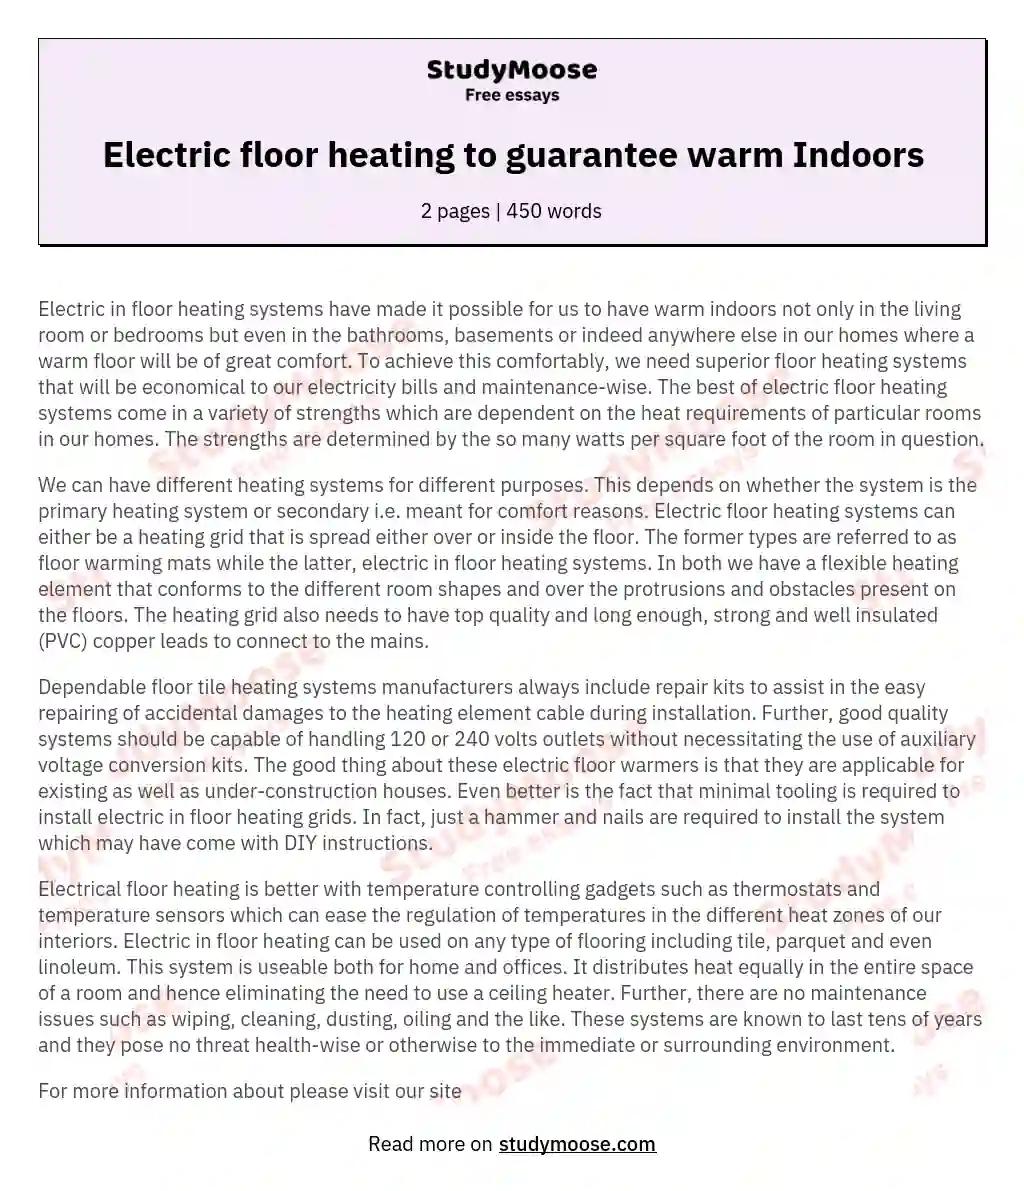 Electric floor heating to guarantee warm Indoors essay